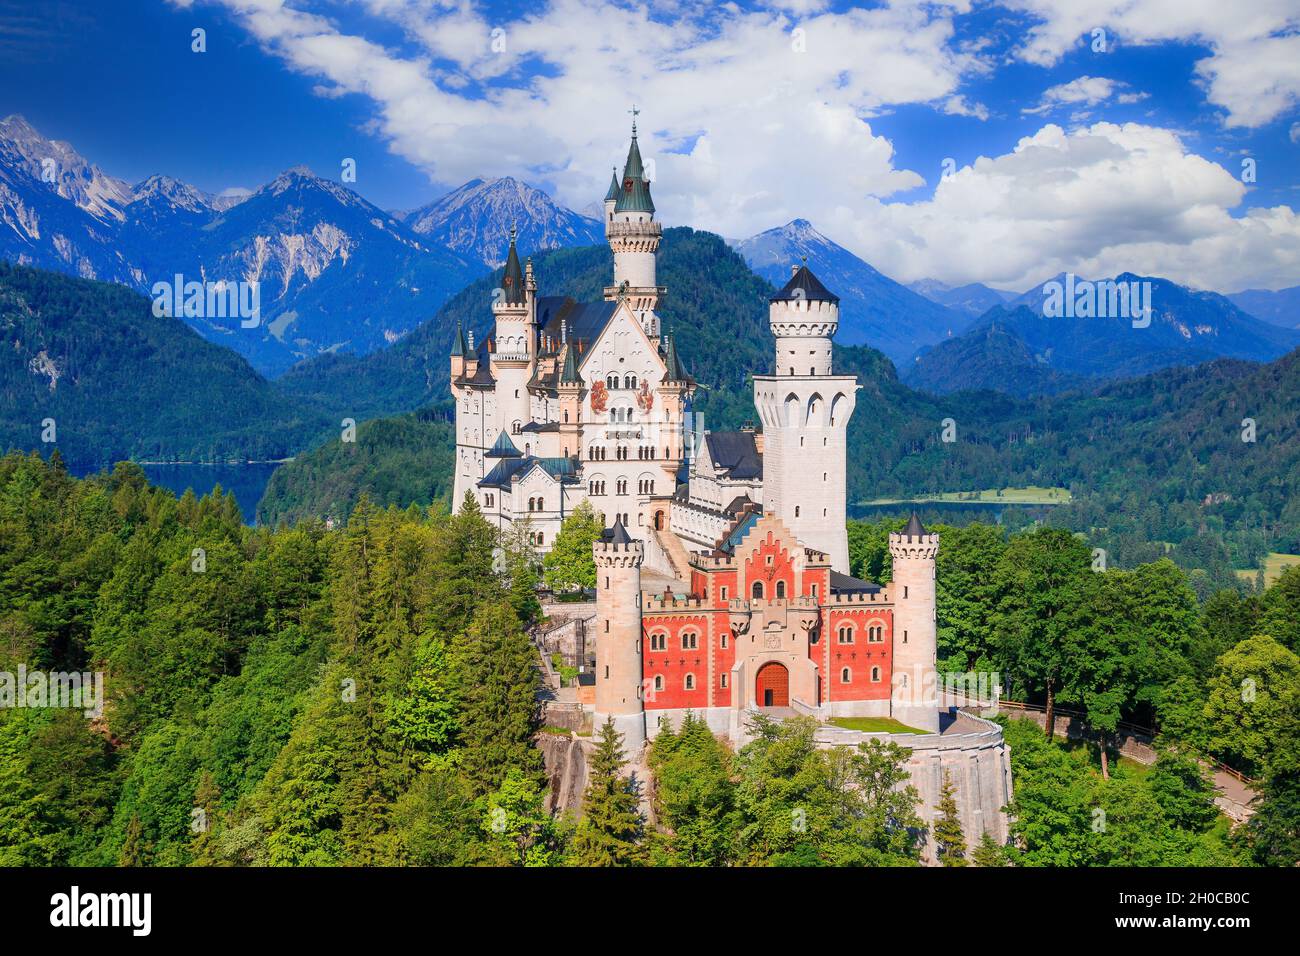 Schloss Neuschwanstein, Deutschland. Vorderansicht des Schlosses mit den bayerischen Alpen im Hintergrund. Stockfoto